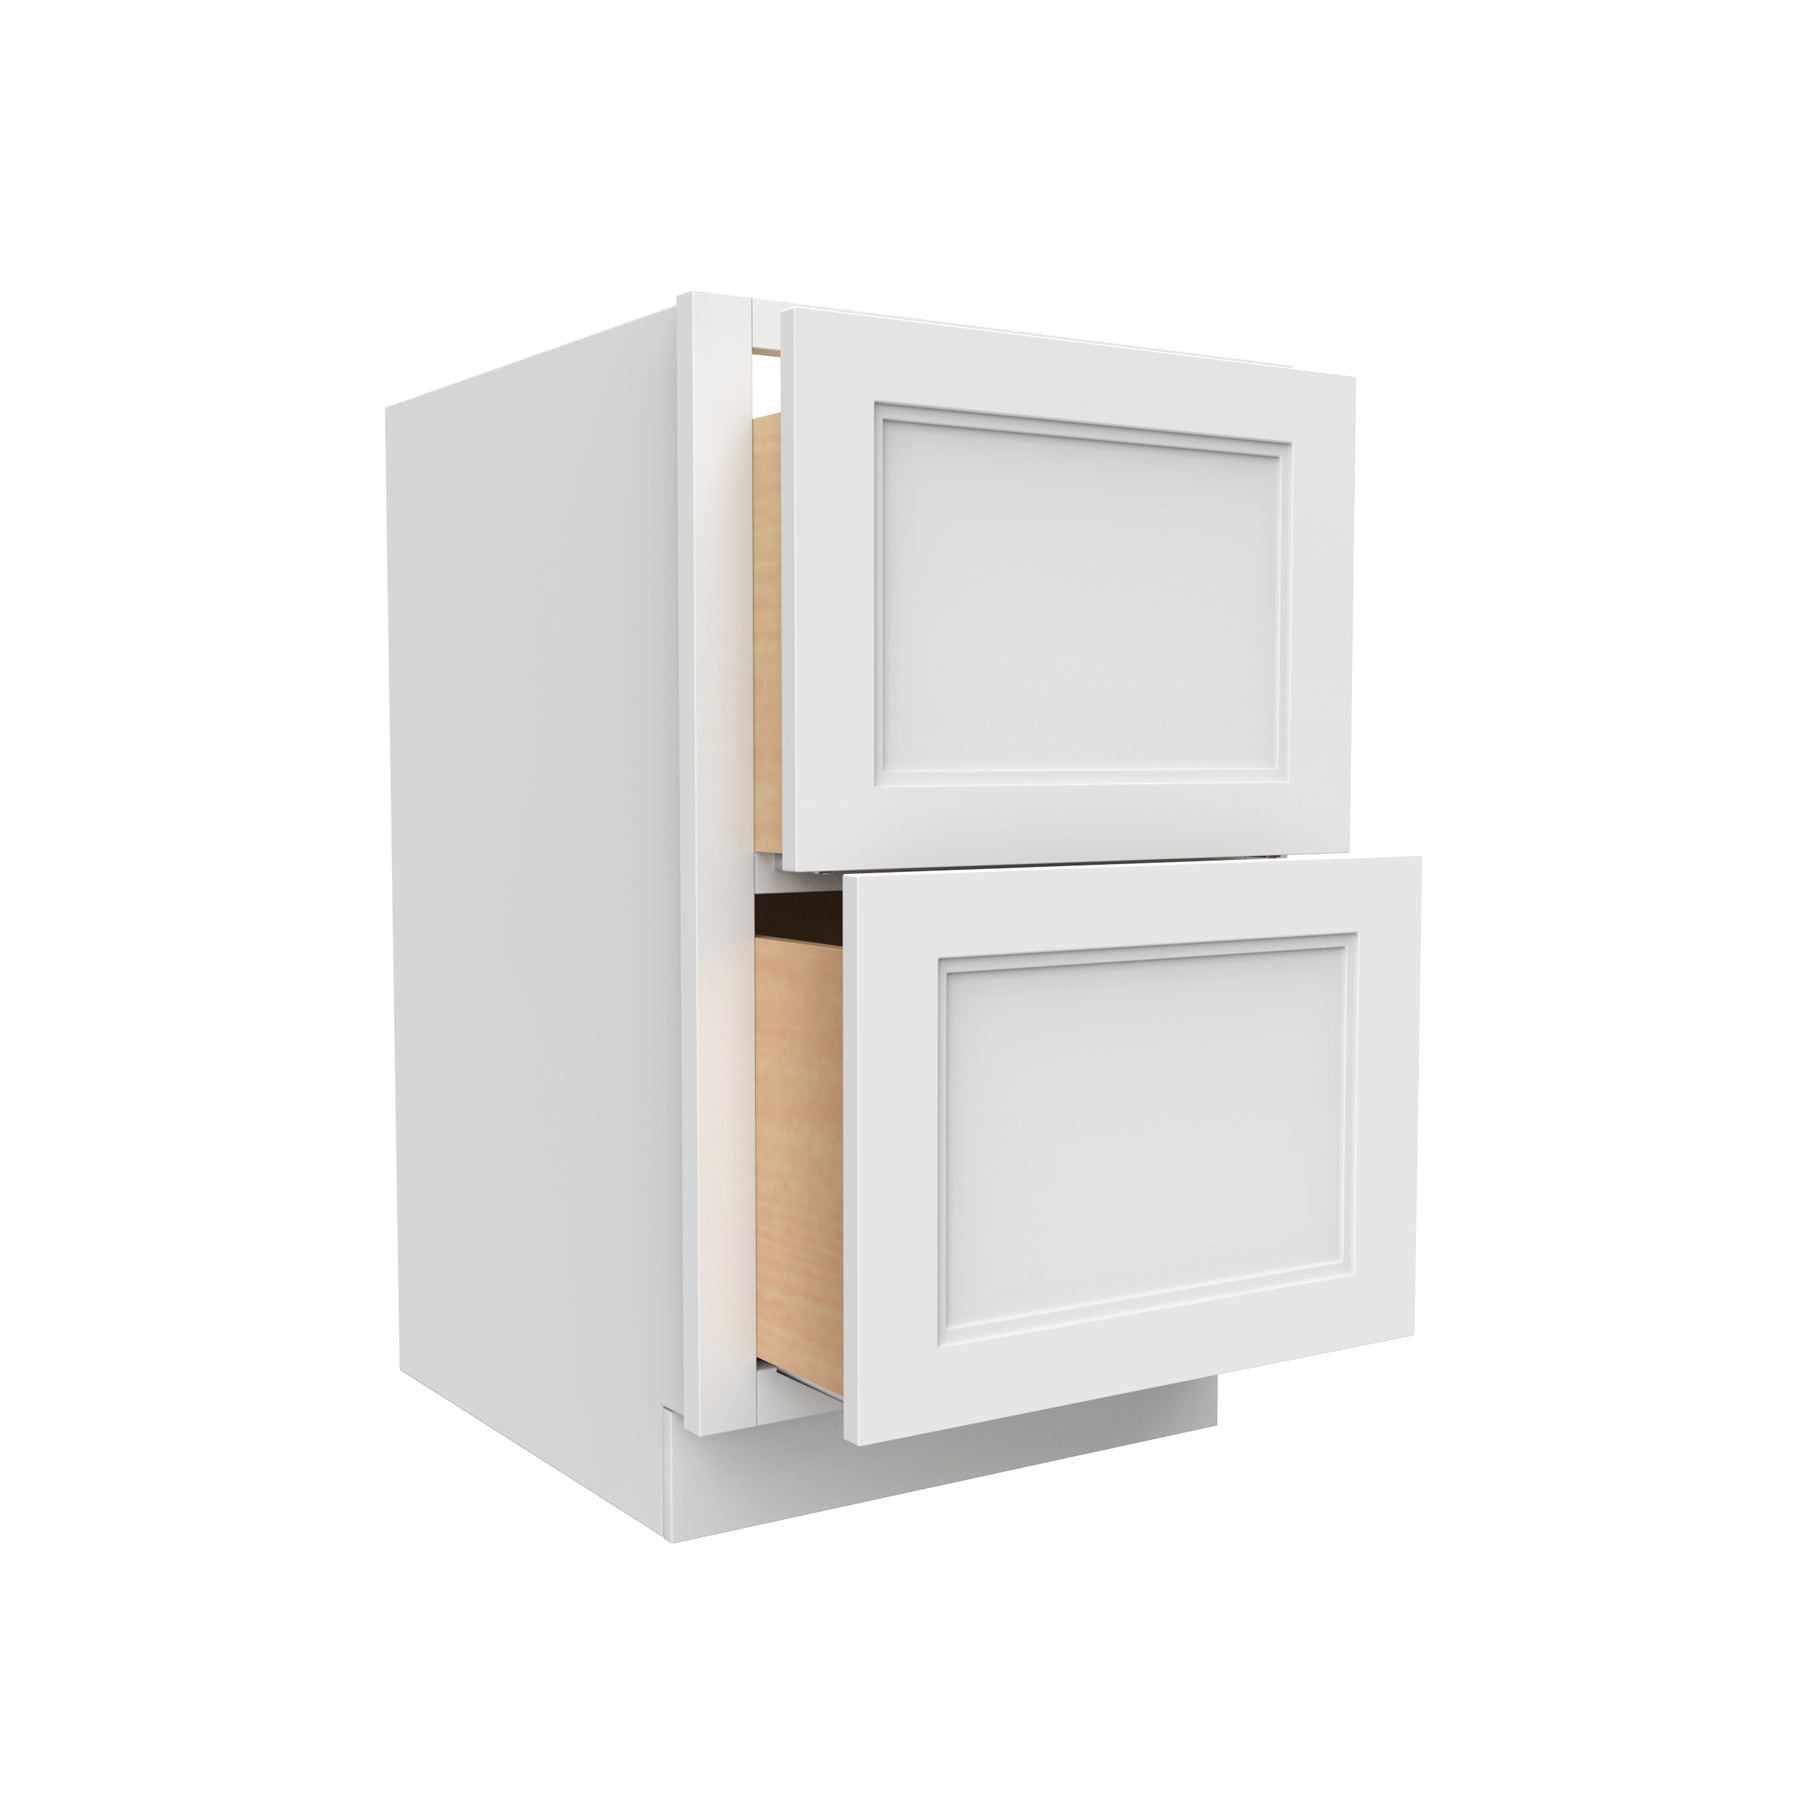 RTA - Fashion White - 2 Drawer Base Cabinet | 36"W x 34.5"H x 24"D